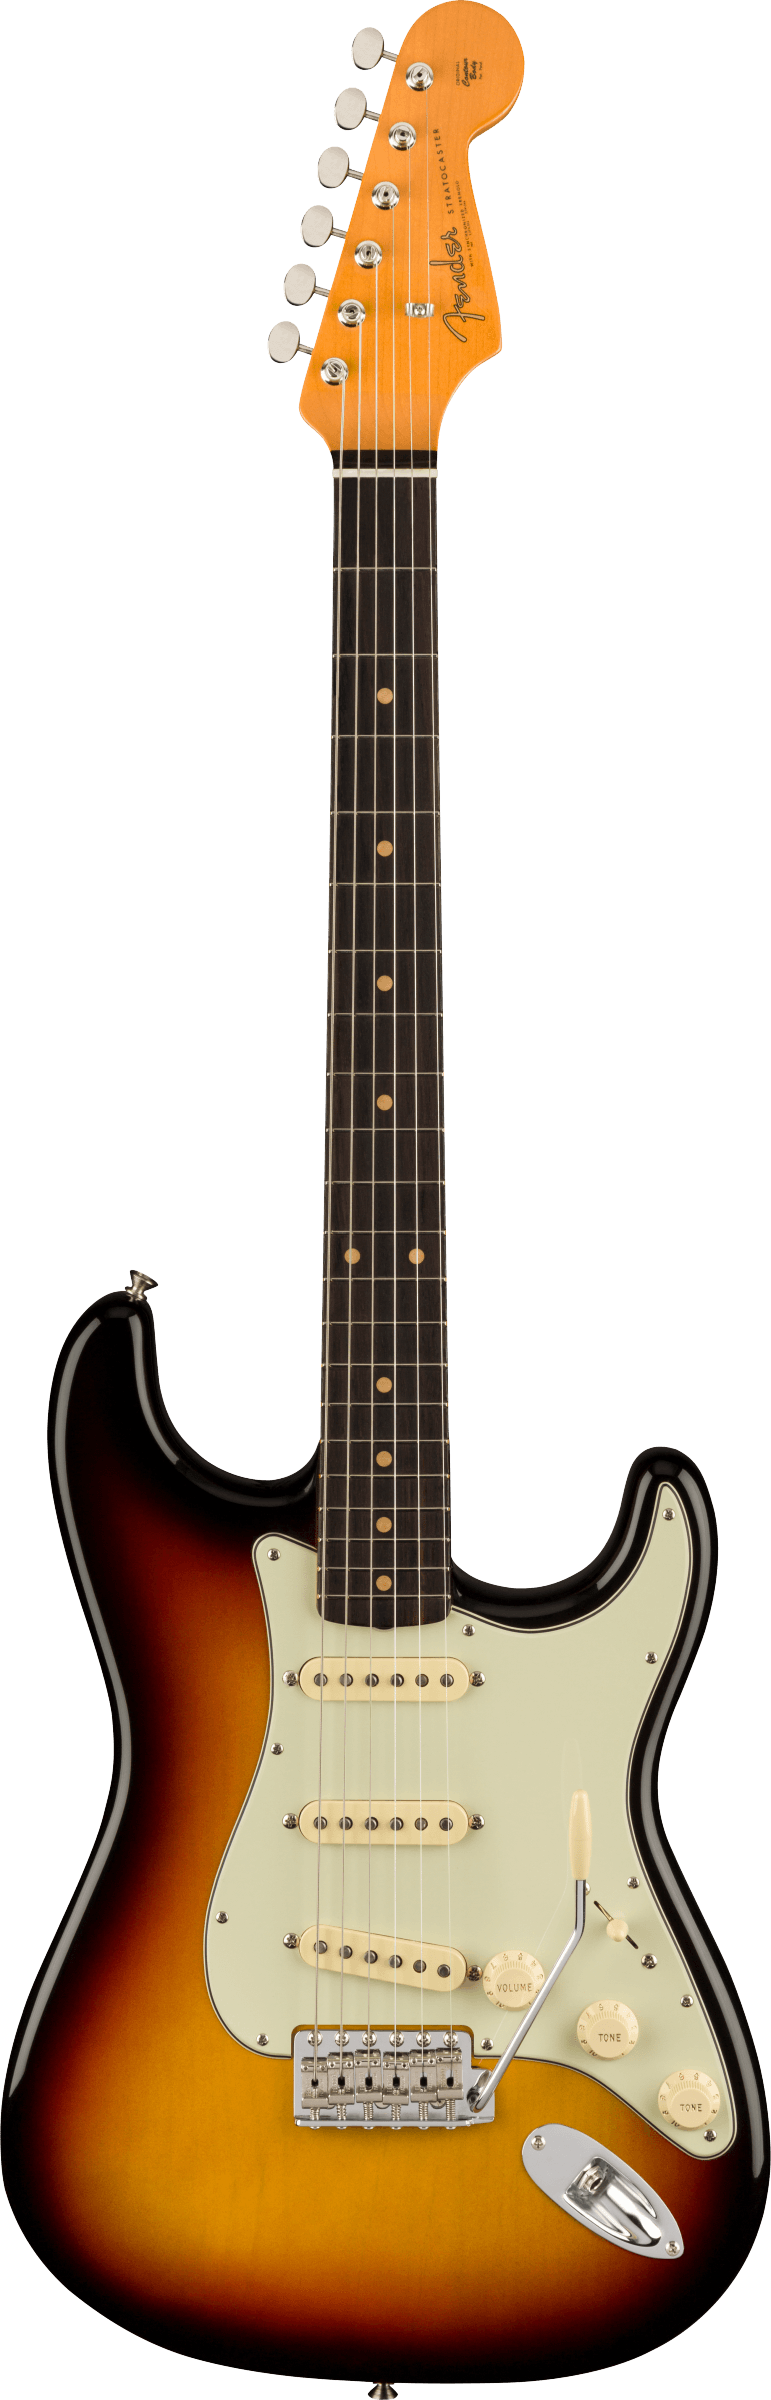 American Vintage II 1961 Stratocaster 3-Color Sunburst